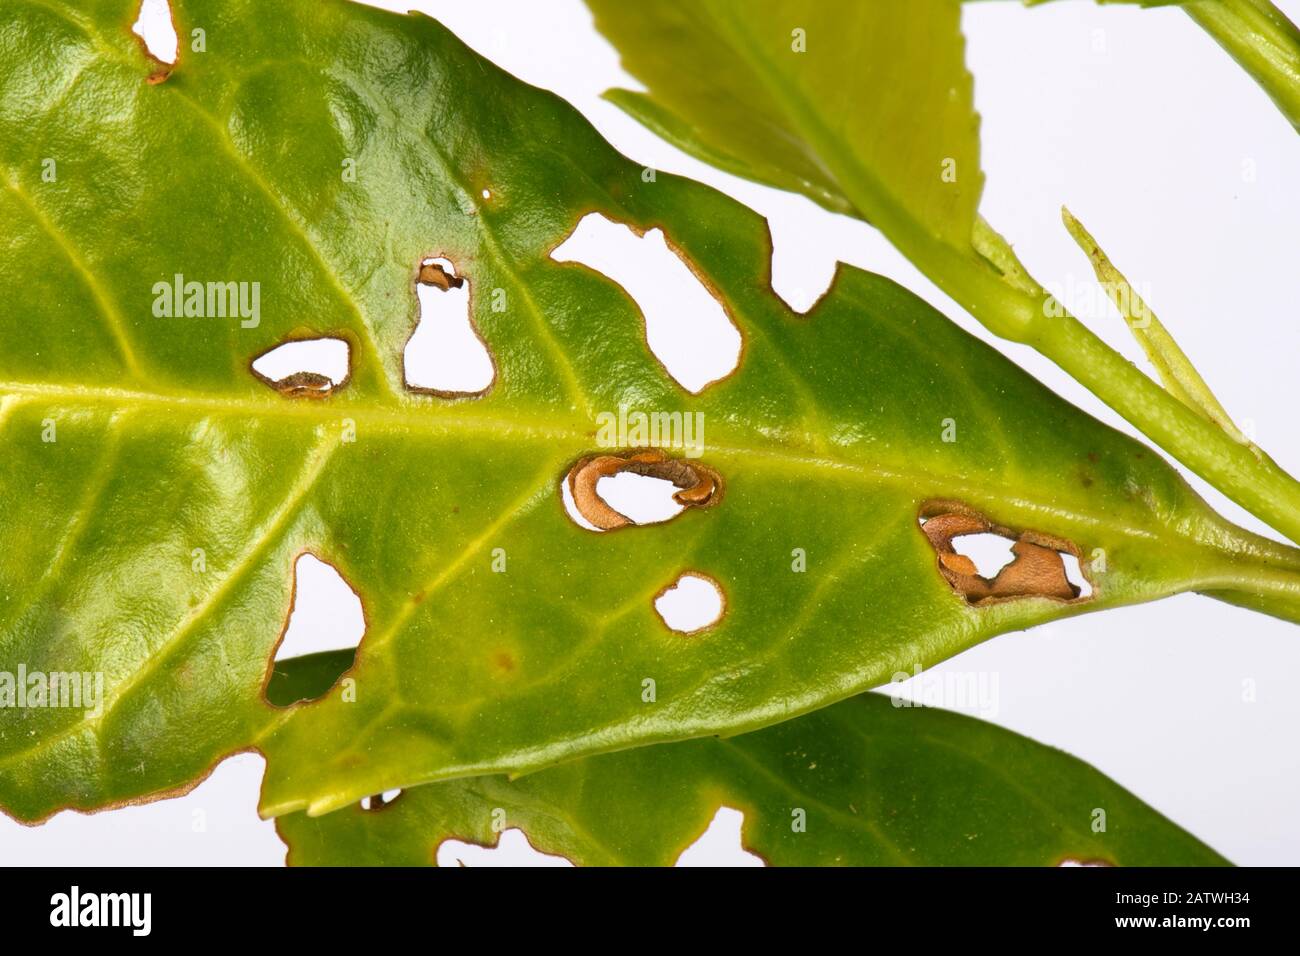 Le trou de tir bactérien (Pseudomonas syringae) a affecté les feuilles de laurier, Prunus lauroceratus, dans une haie de jardin, Berkshire, Angleterre, Royaume-Uni. Mai. Banque D'Images